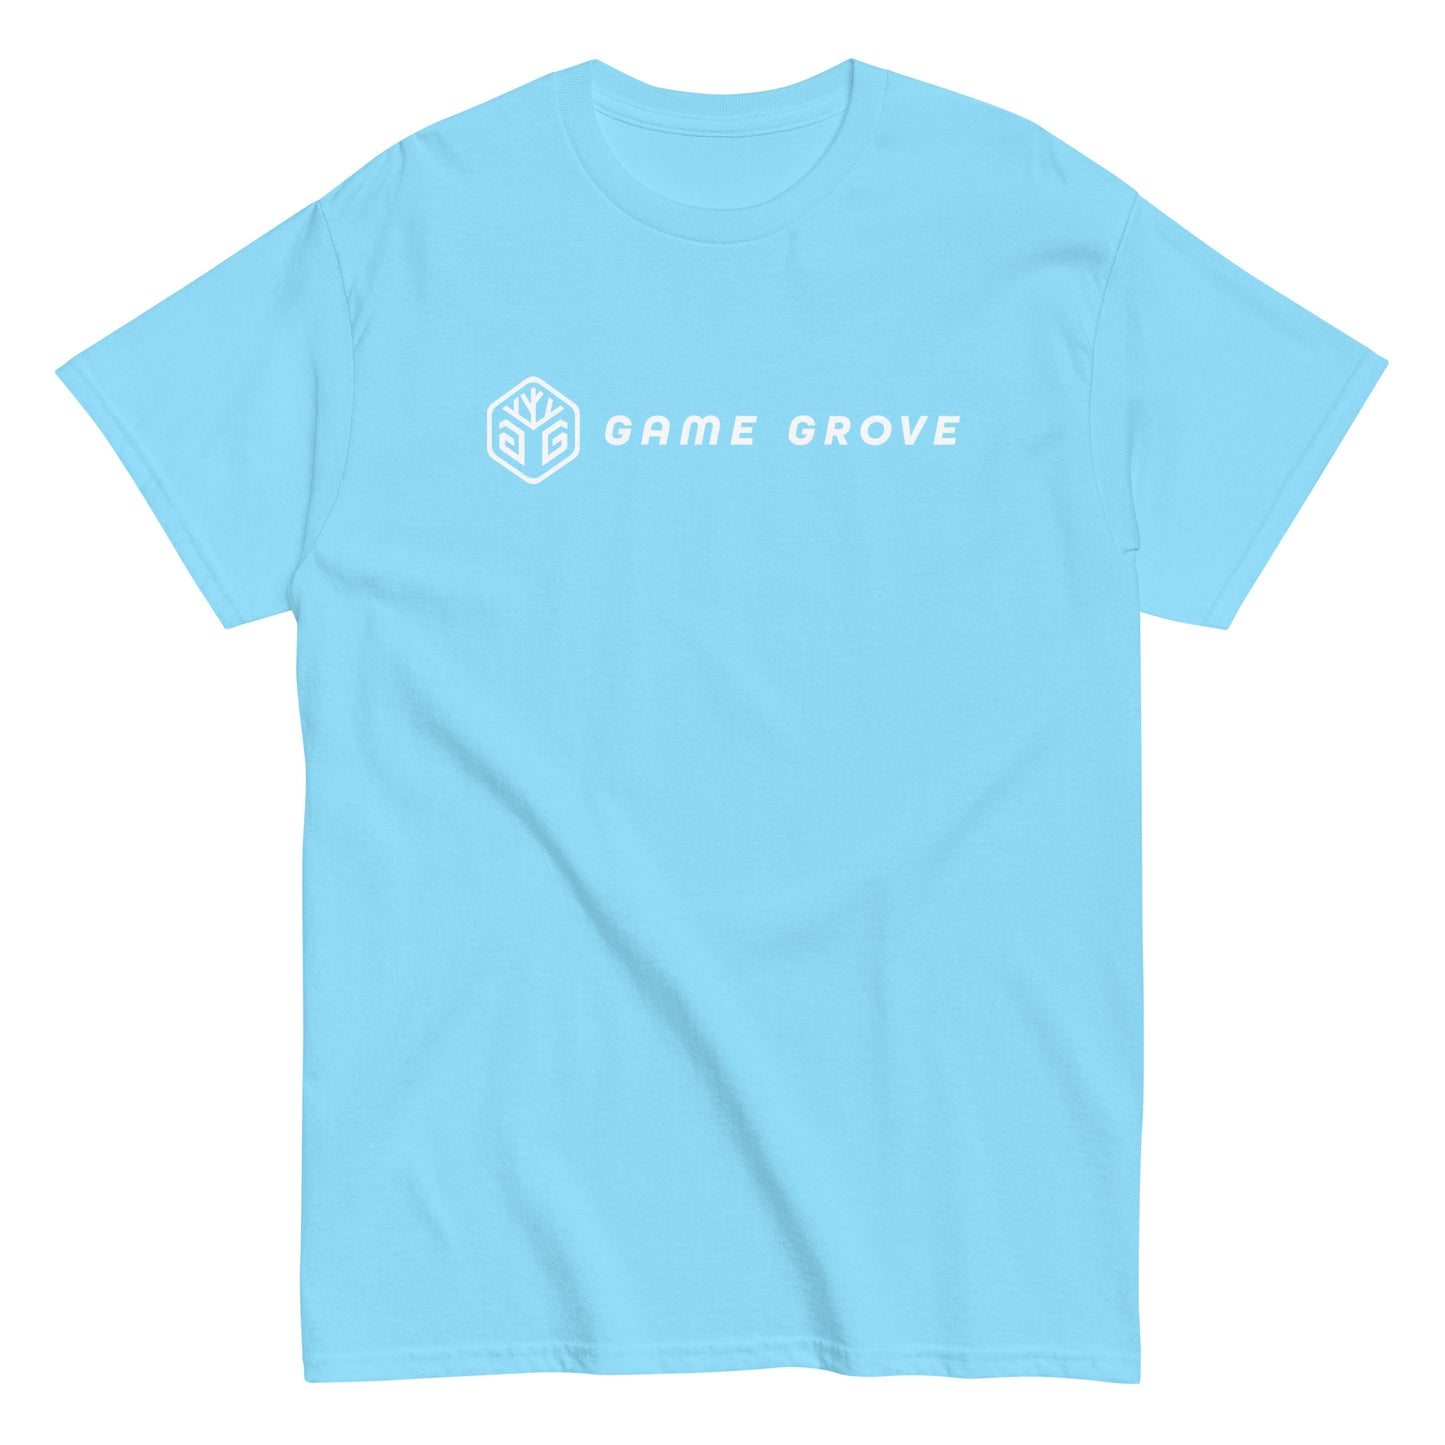 Game Grove - Classic tee